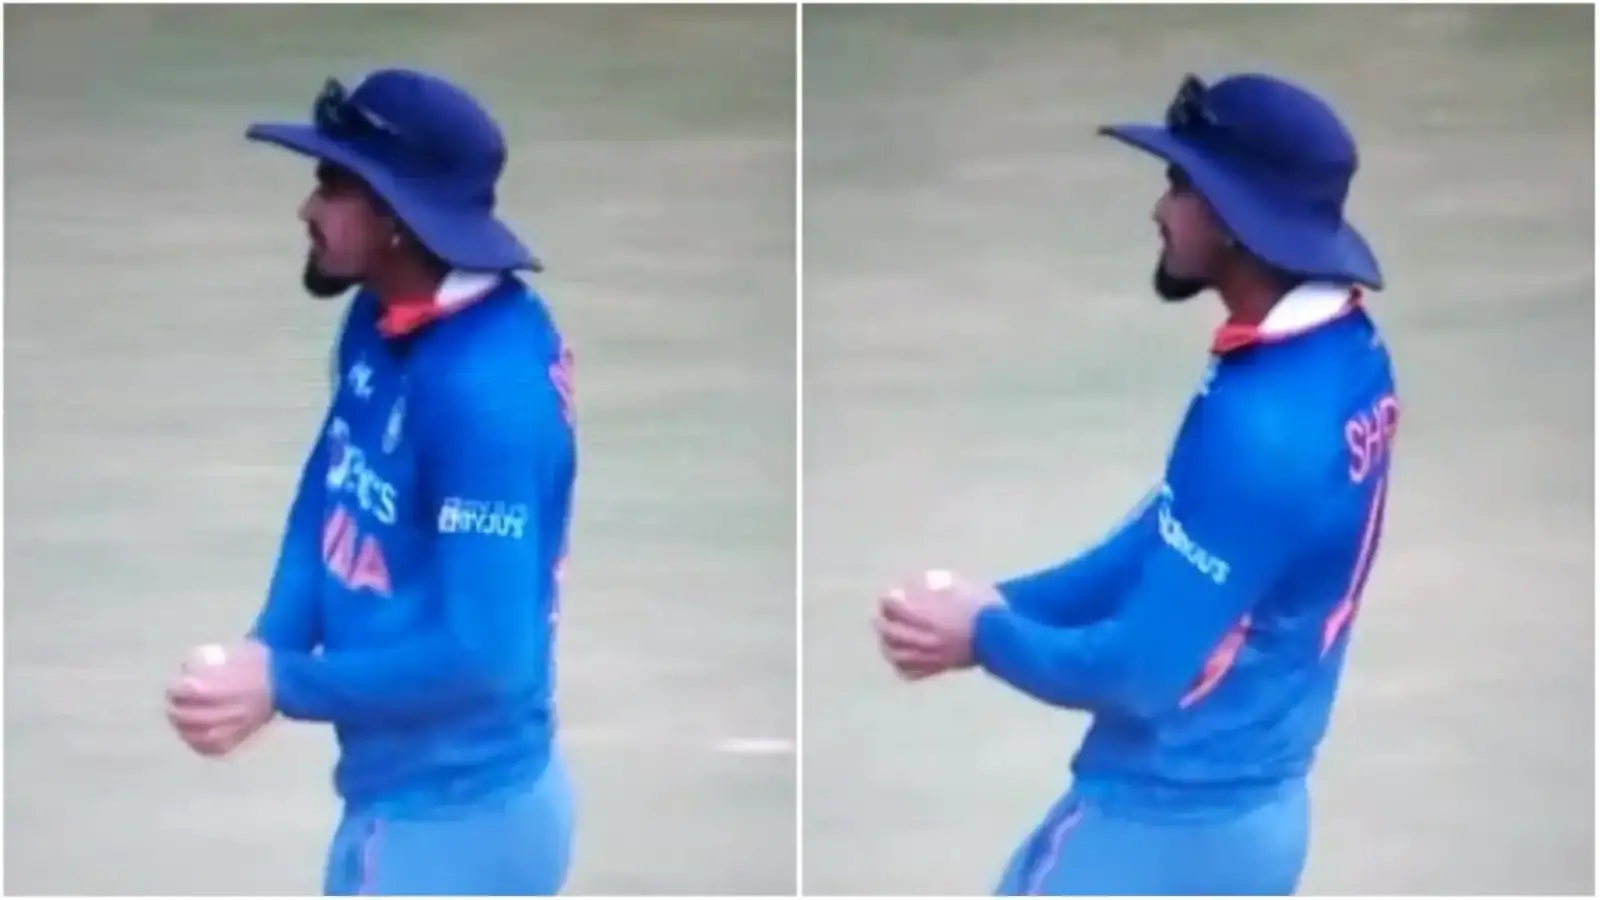  देखें: ब्रूक्स का कैच लेने के बाद अय्यर का अनोखा डांस सेलिब्रेशन वायरल |  क्रिकेट
